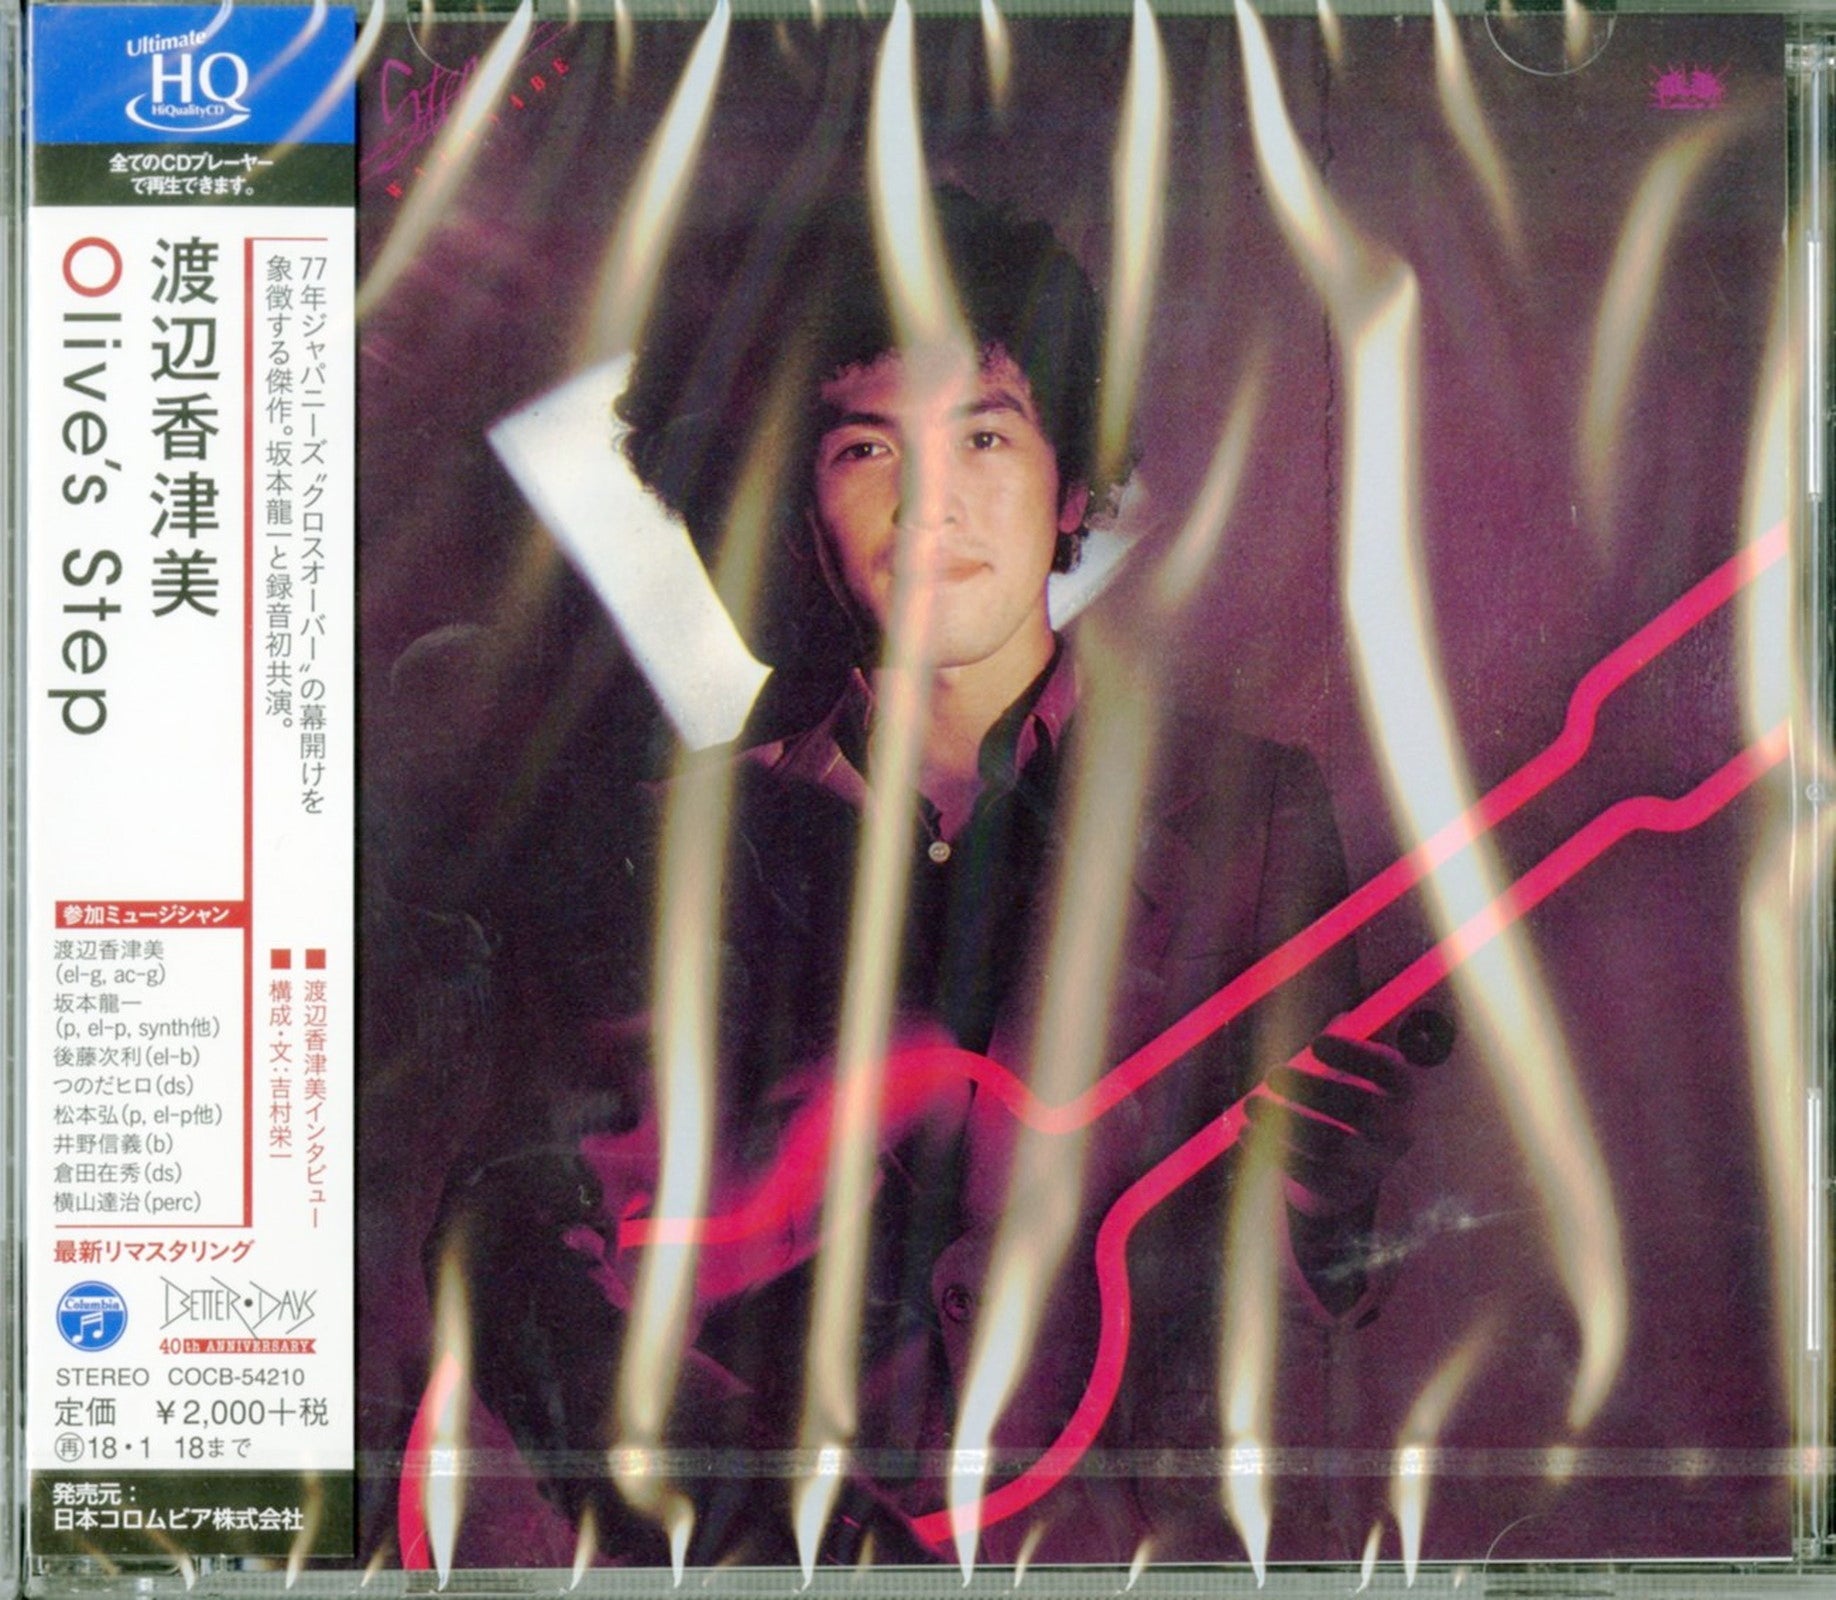 Watanabe Kazumi Olive'S Step Japan HQCD CDs Vinyl Japan Store